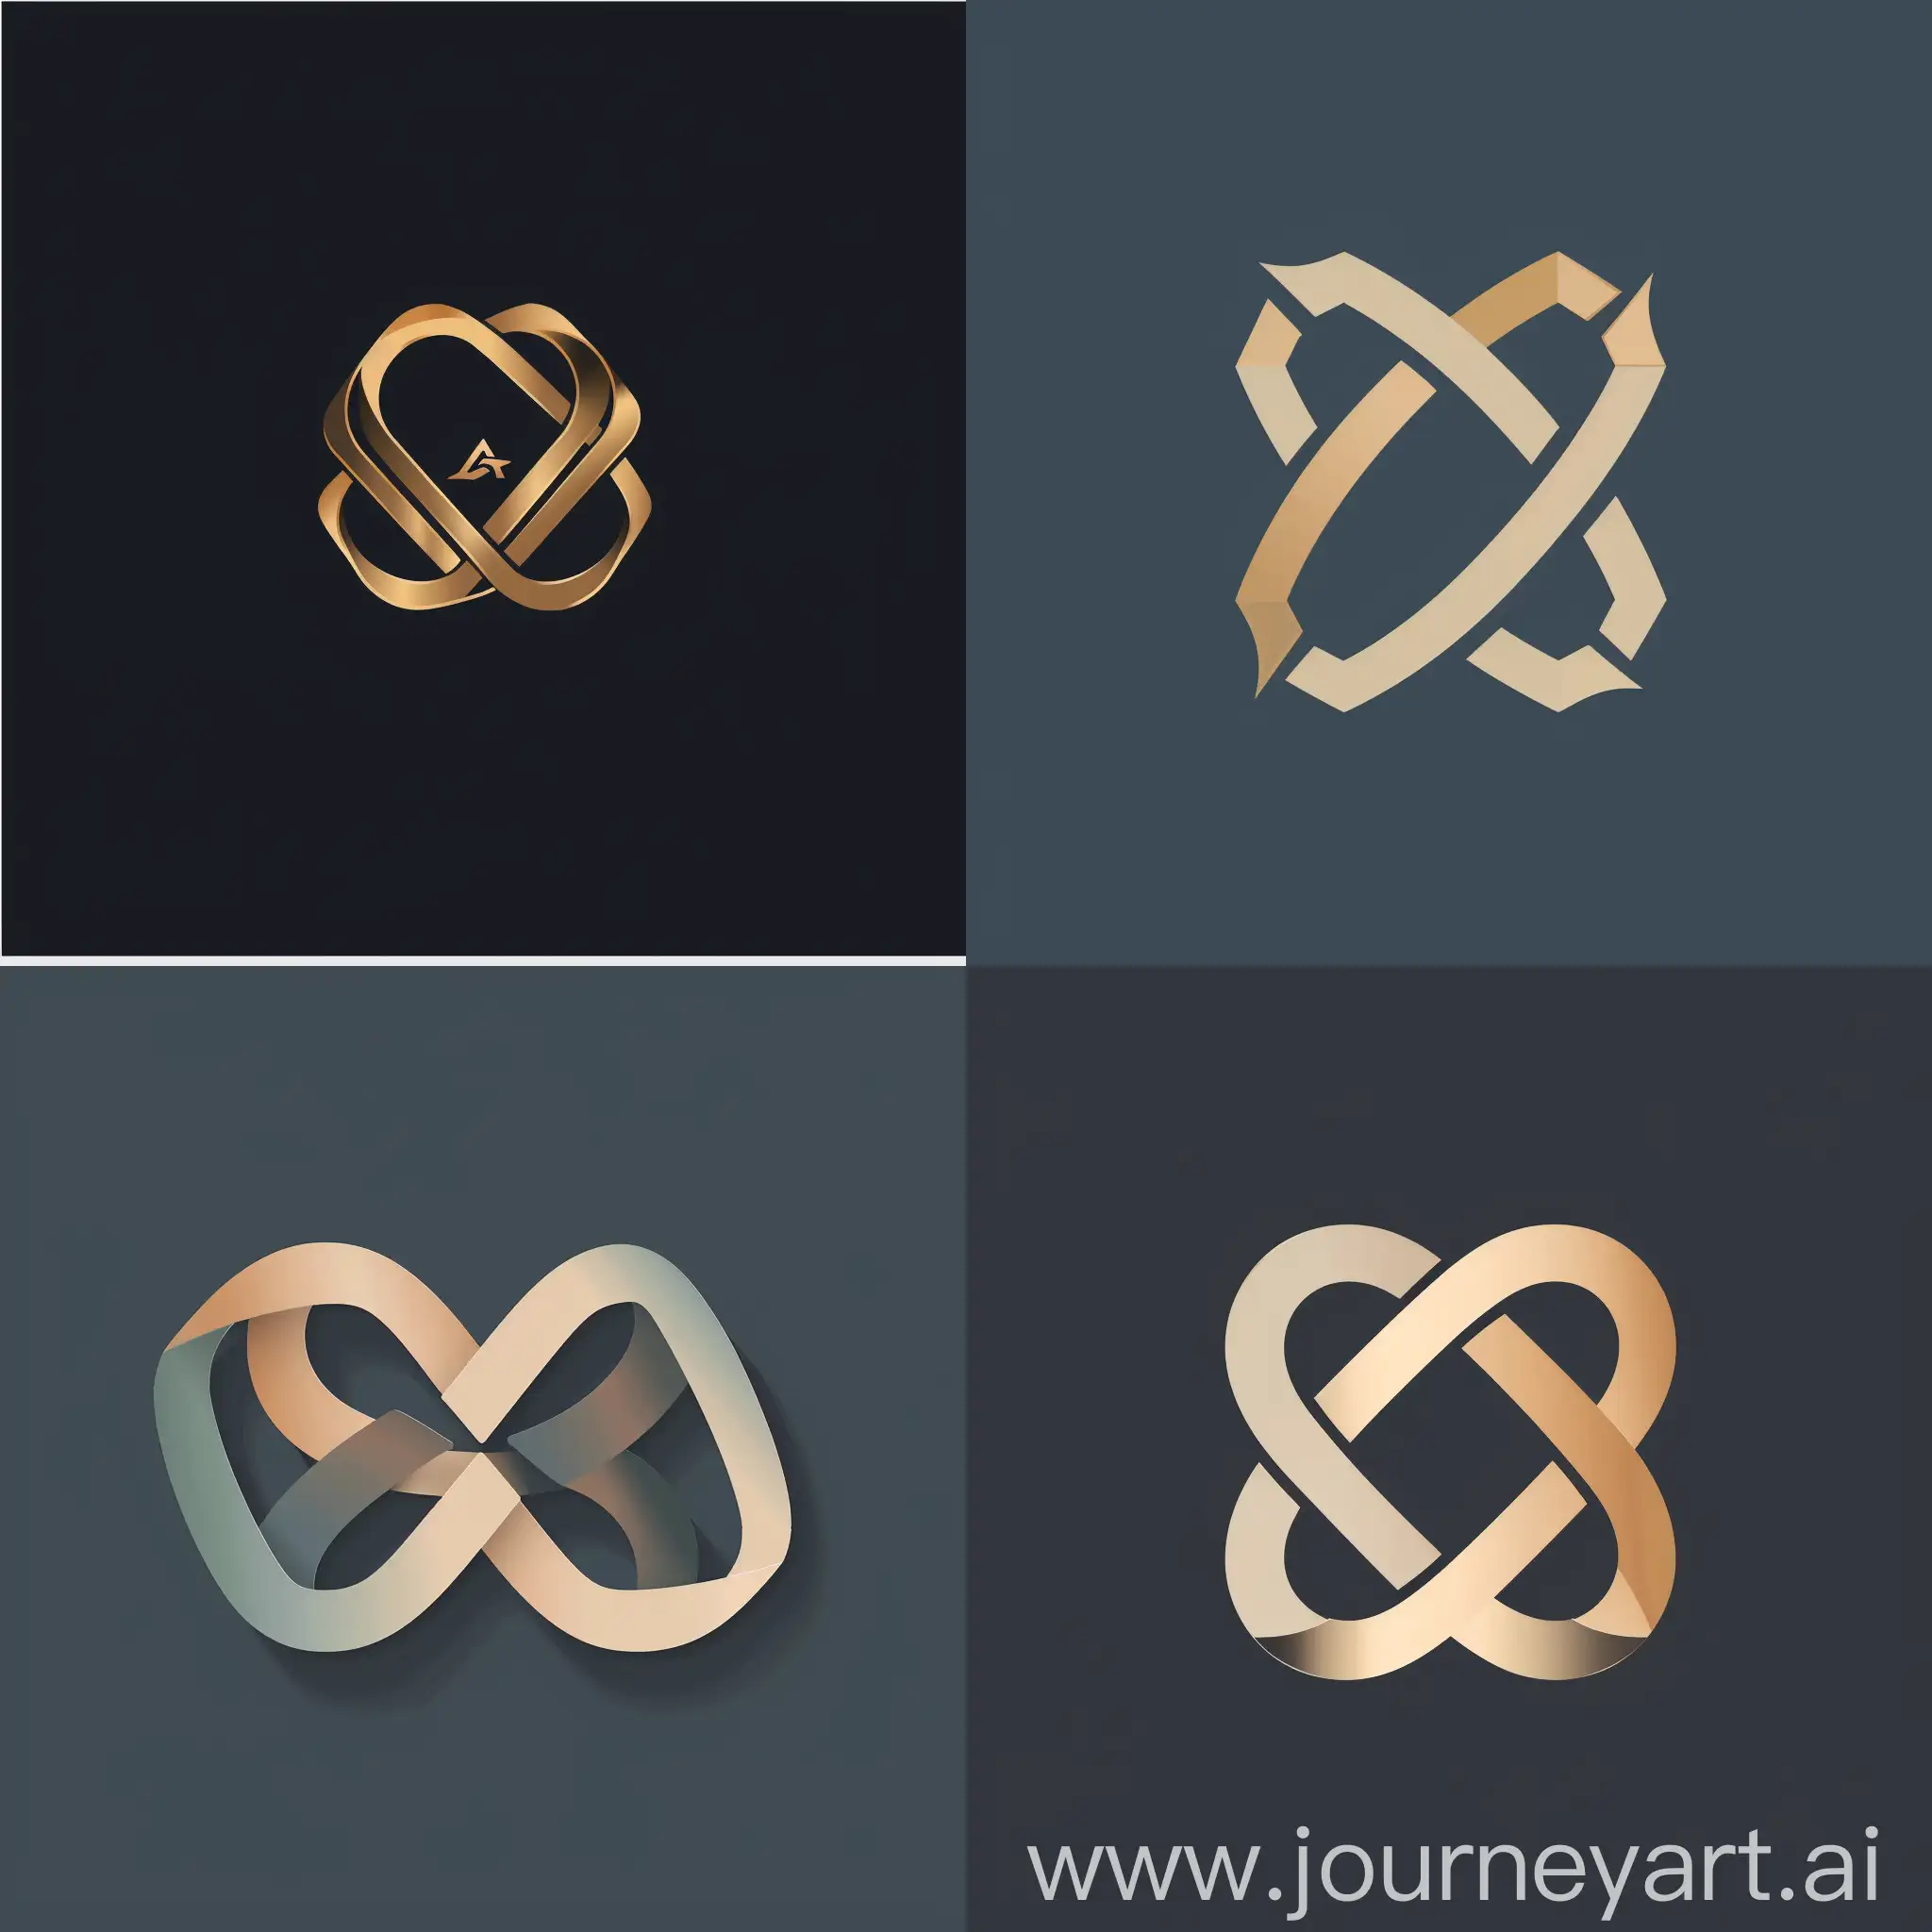 El logotipo de Carafri Advisory Solutions es una combinación estilizada de las iniciales "C" y "A", entrelazadas para formar un símbolo distintivo que transmite profesionalismo y colaboración. La tipografía moderna y los colores sobrios refuerzan la seriedad y confianza de la marca.